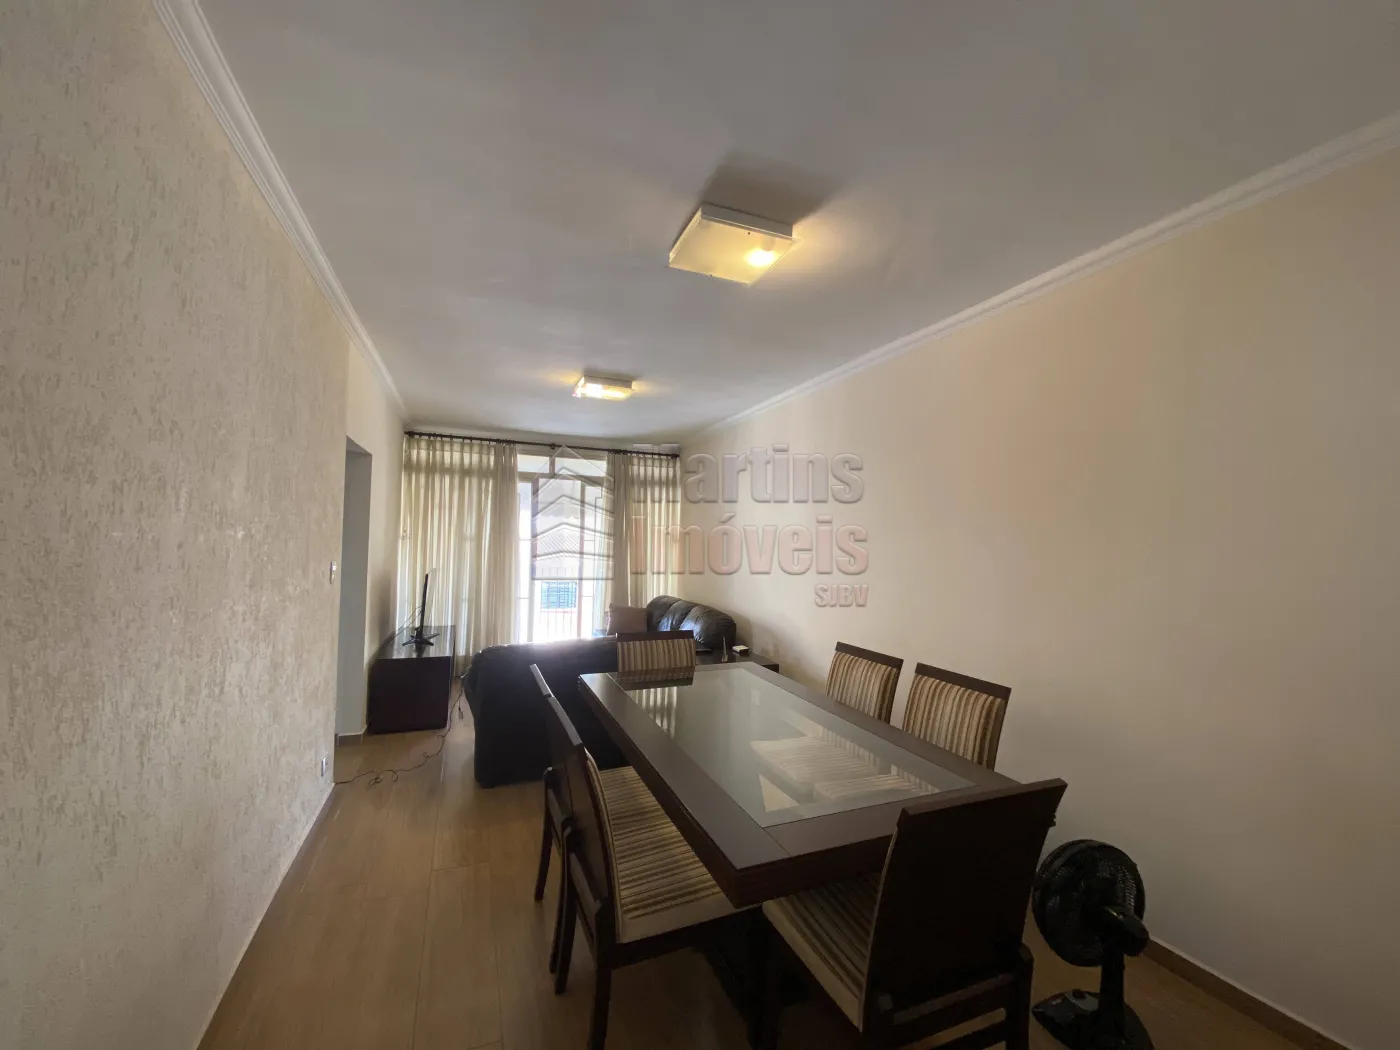 Comprar Apartamento / Padrão em São João da Boa Vista R$ 360.000,00 - Foto 3